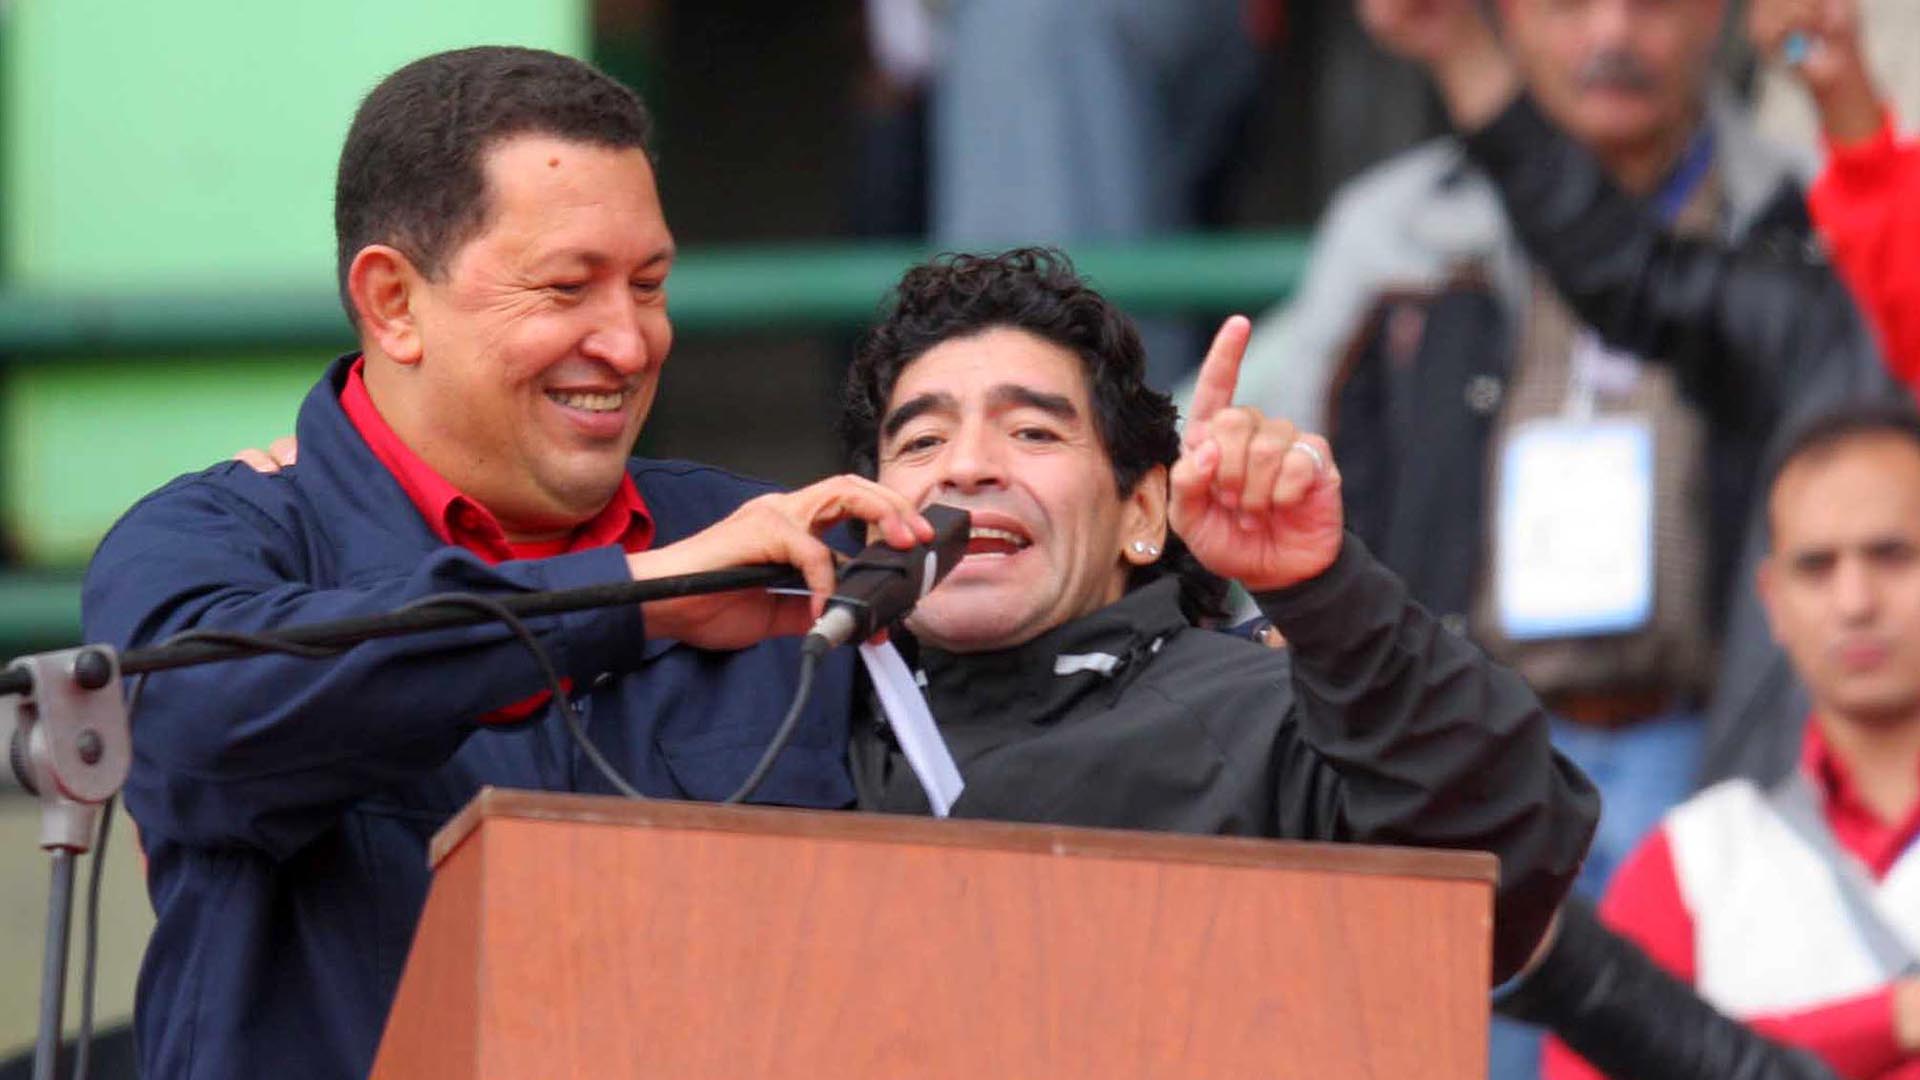 ****nacp2NOTICIAS ARGENTINASMAR DEL PLATA, NOVIEMBRE 4:El presidente de Venezuela, Hugo Chavez, y Diego Maradona durante el acto realizado en el estadio mundialista en el marco de Cumbre de los Pueblos.Foto NA:Gonzalo Calvelo-El Dia/pl****